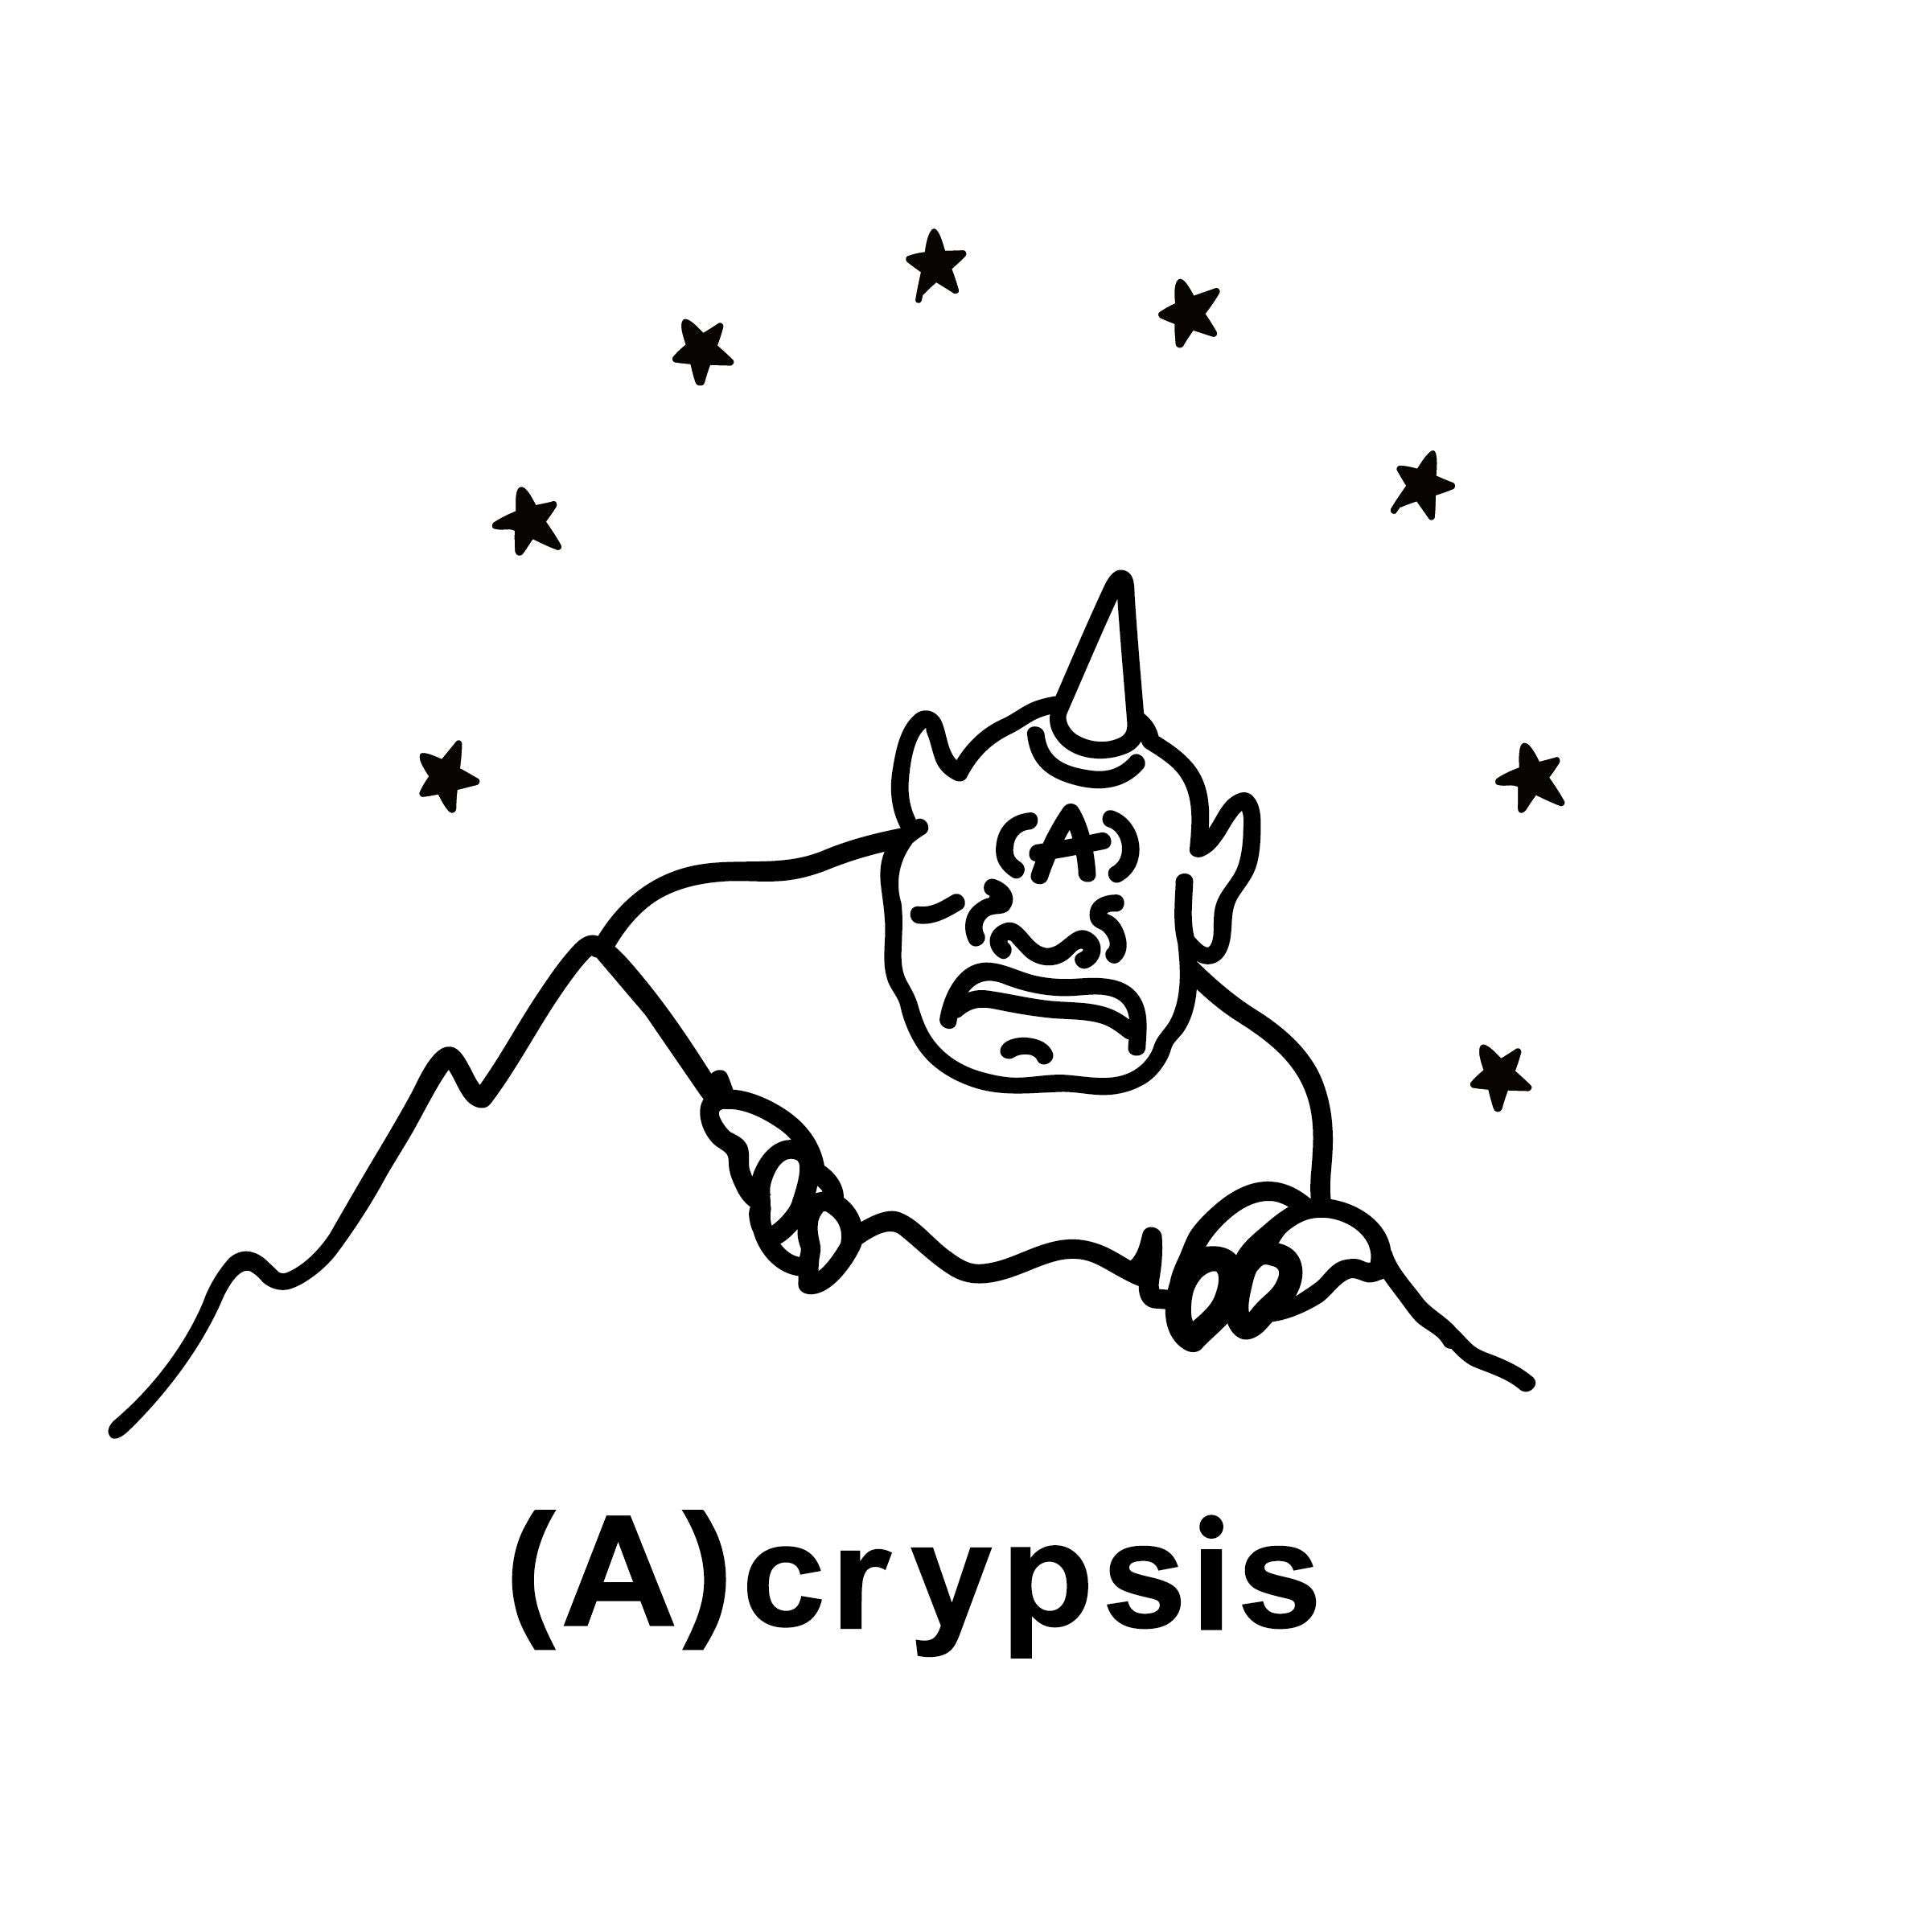 (A)crypsis